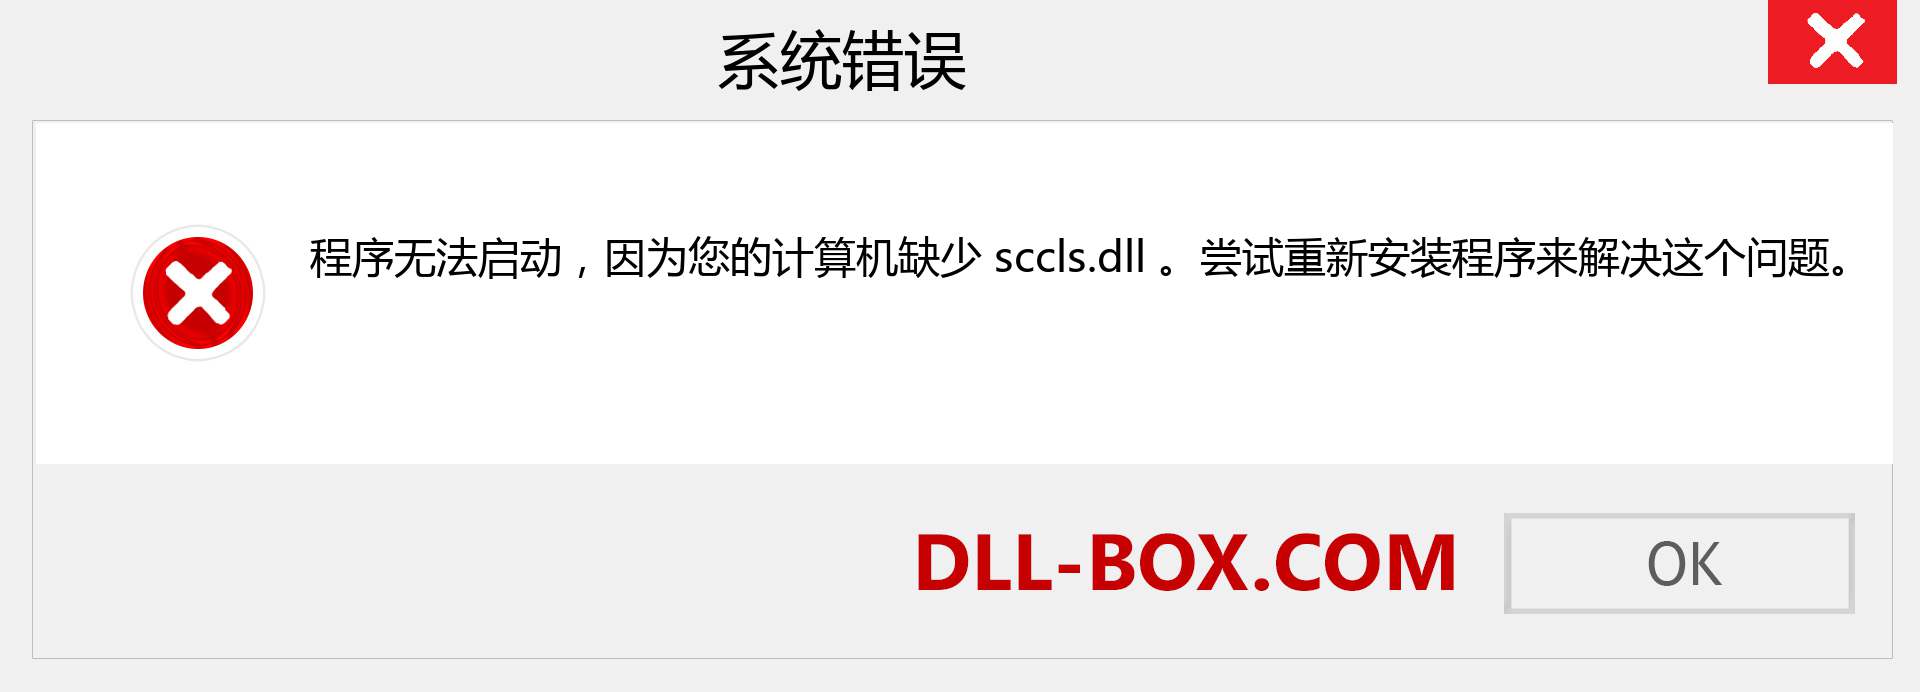 sccls.dll 文件丢失？。 适用于 Windows 7、8、10 的下载 - 修复 Windows、照片、图像上的 sccls dll 丢失错误